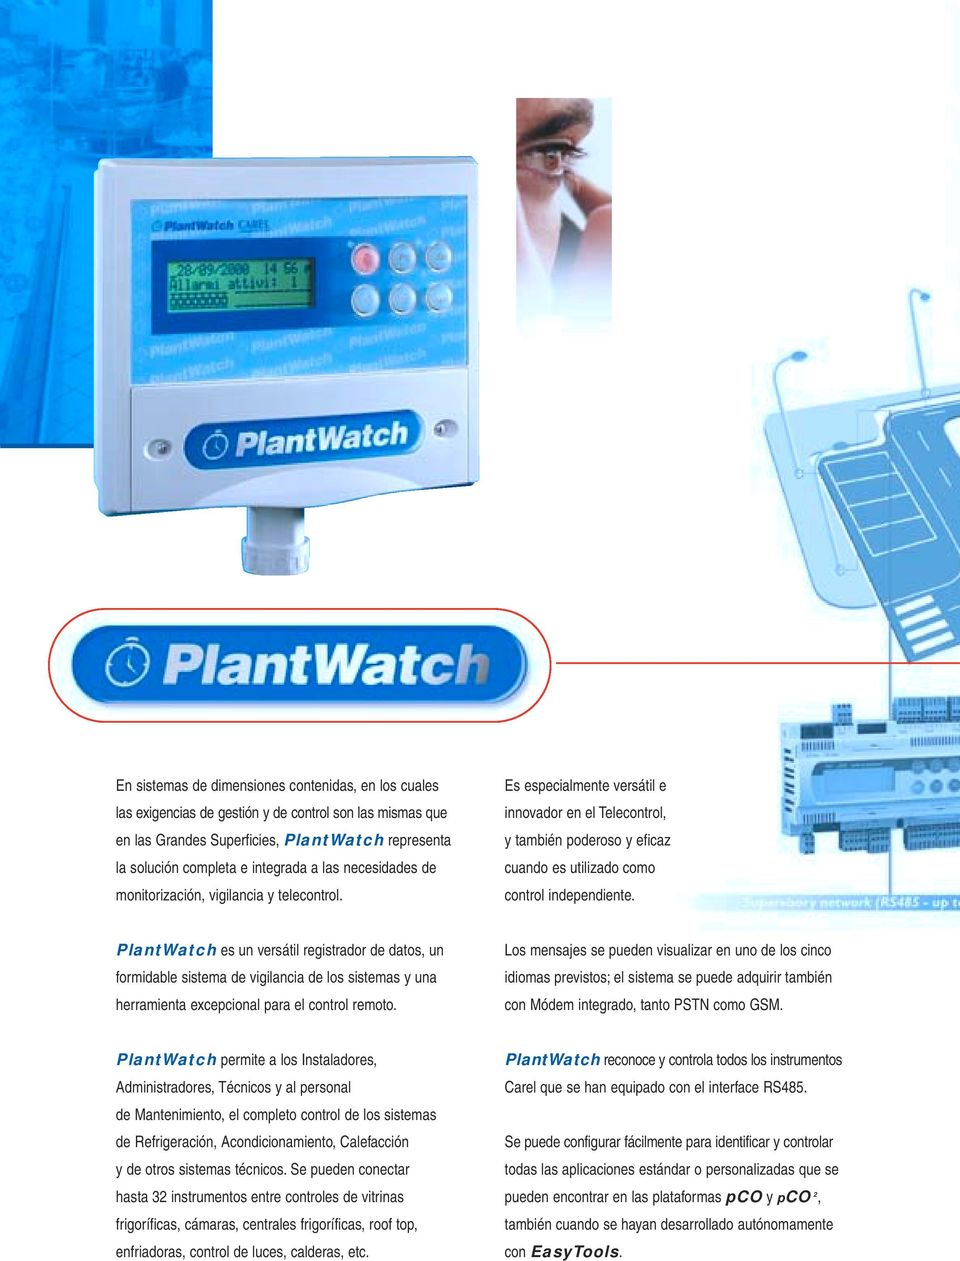 PlantWatch es un versátil registrador de datos, un formidable sistema de vigilancia de los sistemas y una herramienta excepcional para el control remoto.